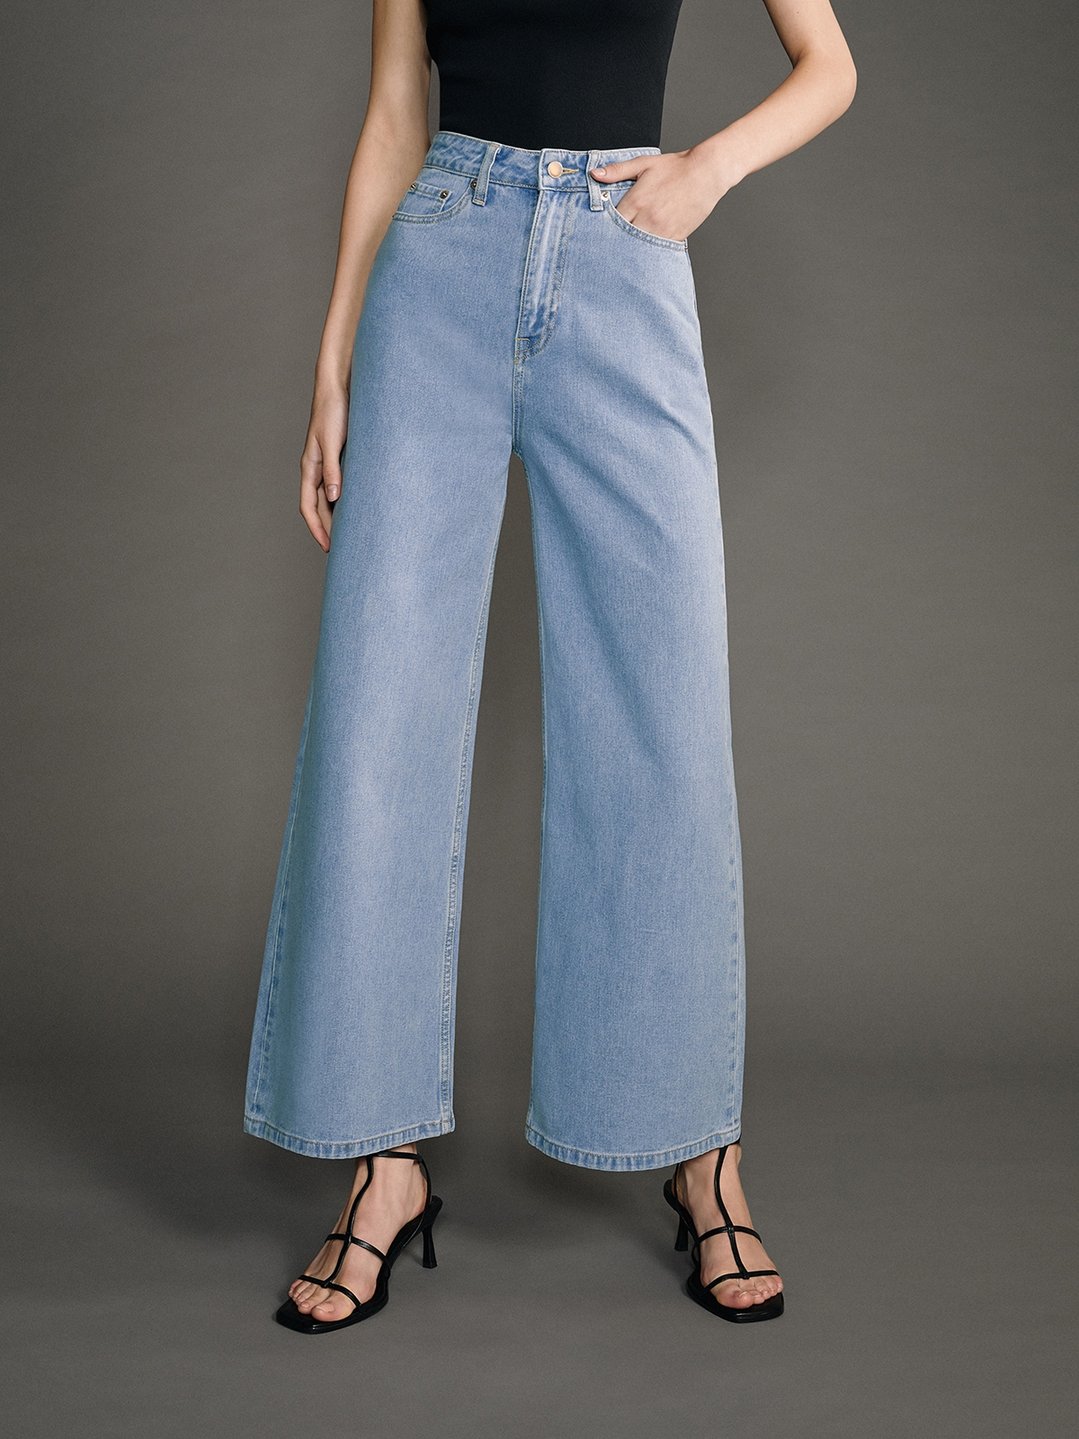 Asymmetrical Straight Leg Jeans - Blue - Pomelo Fashion